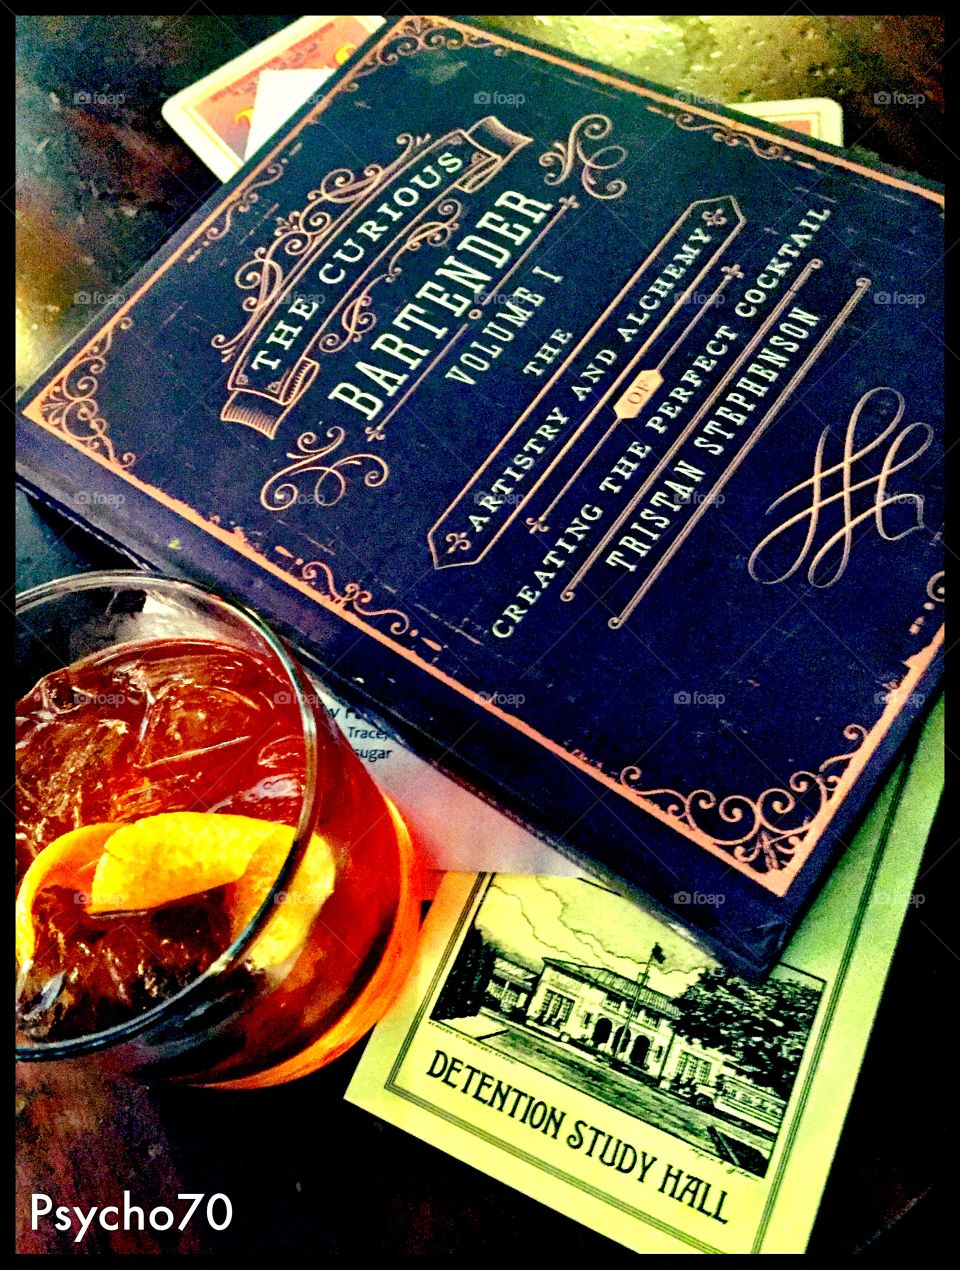 Detention study hall bar cocktail old fashion bartender oregon 